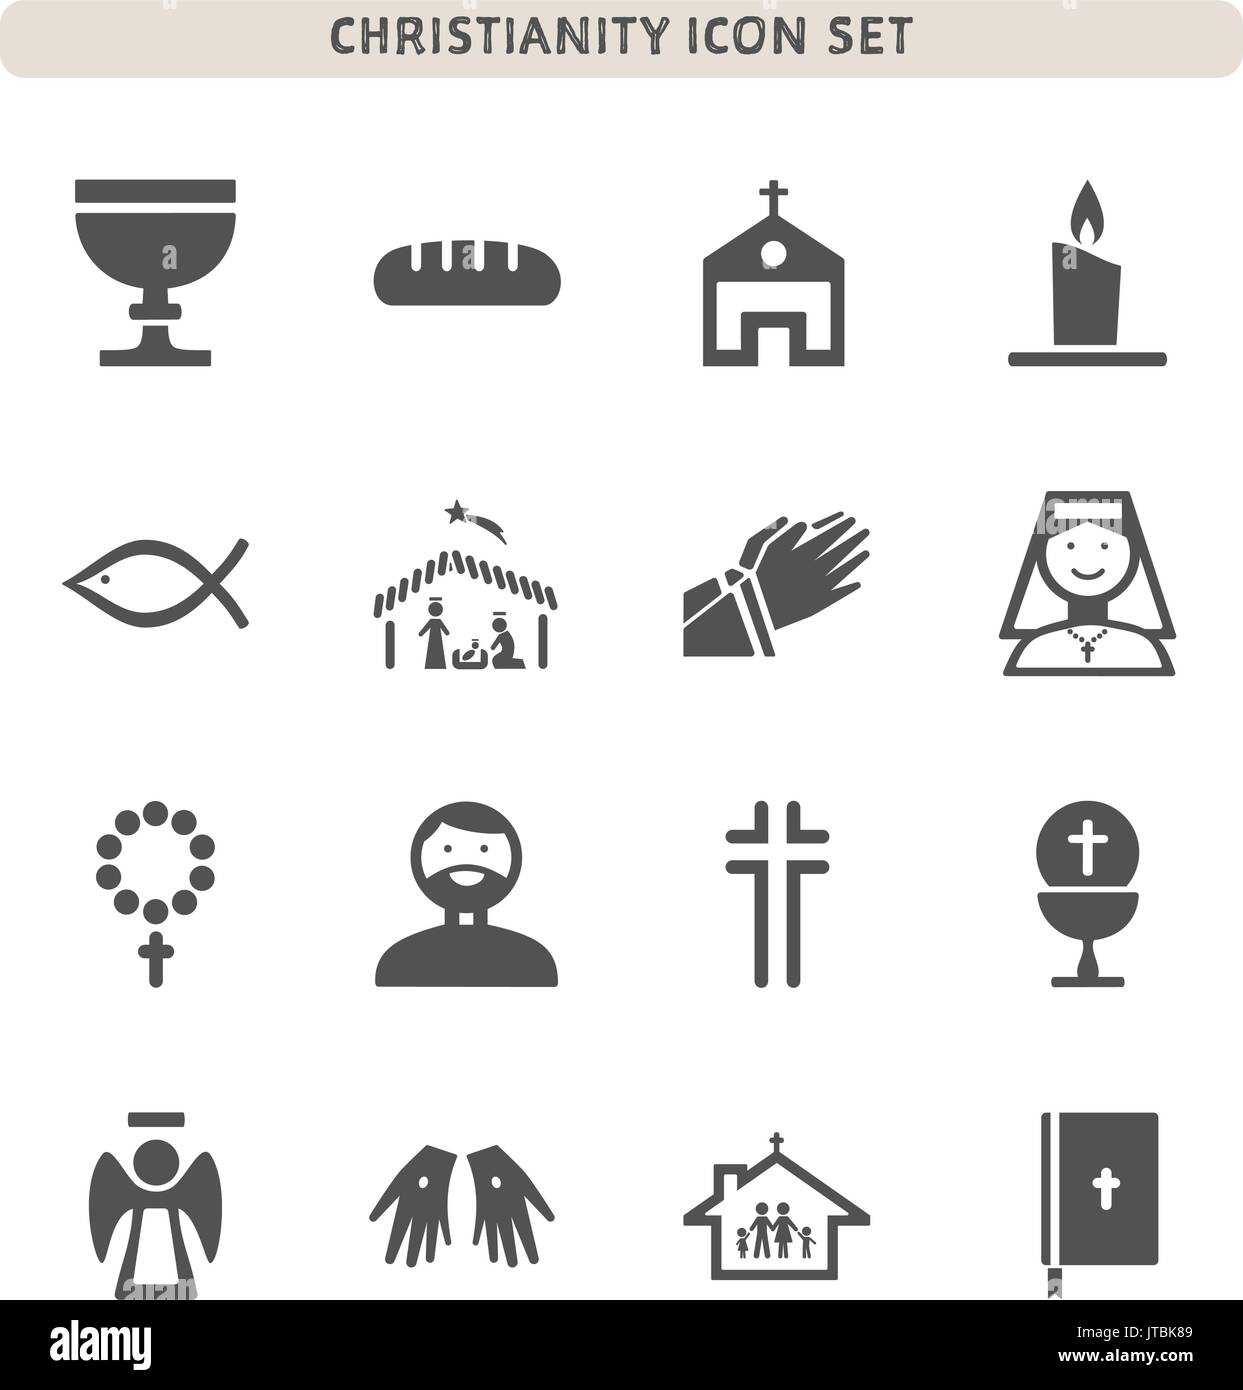 Le christianisme icons set sur fond blanc Illustration de Vecteur